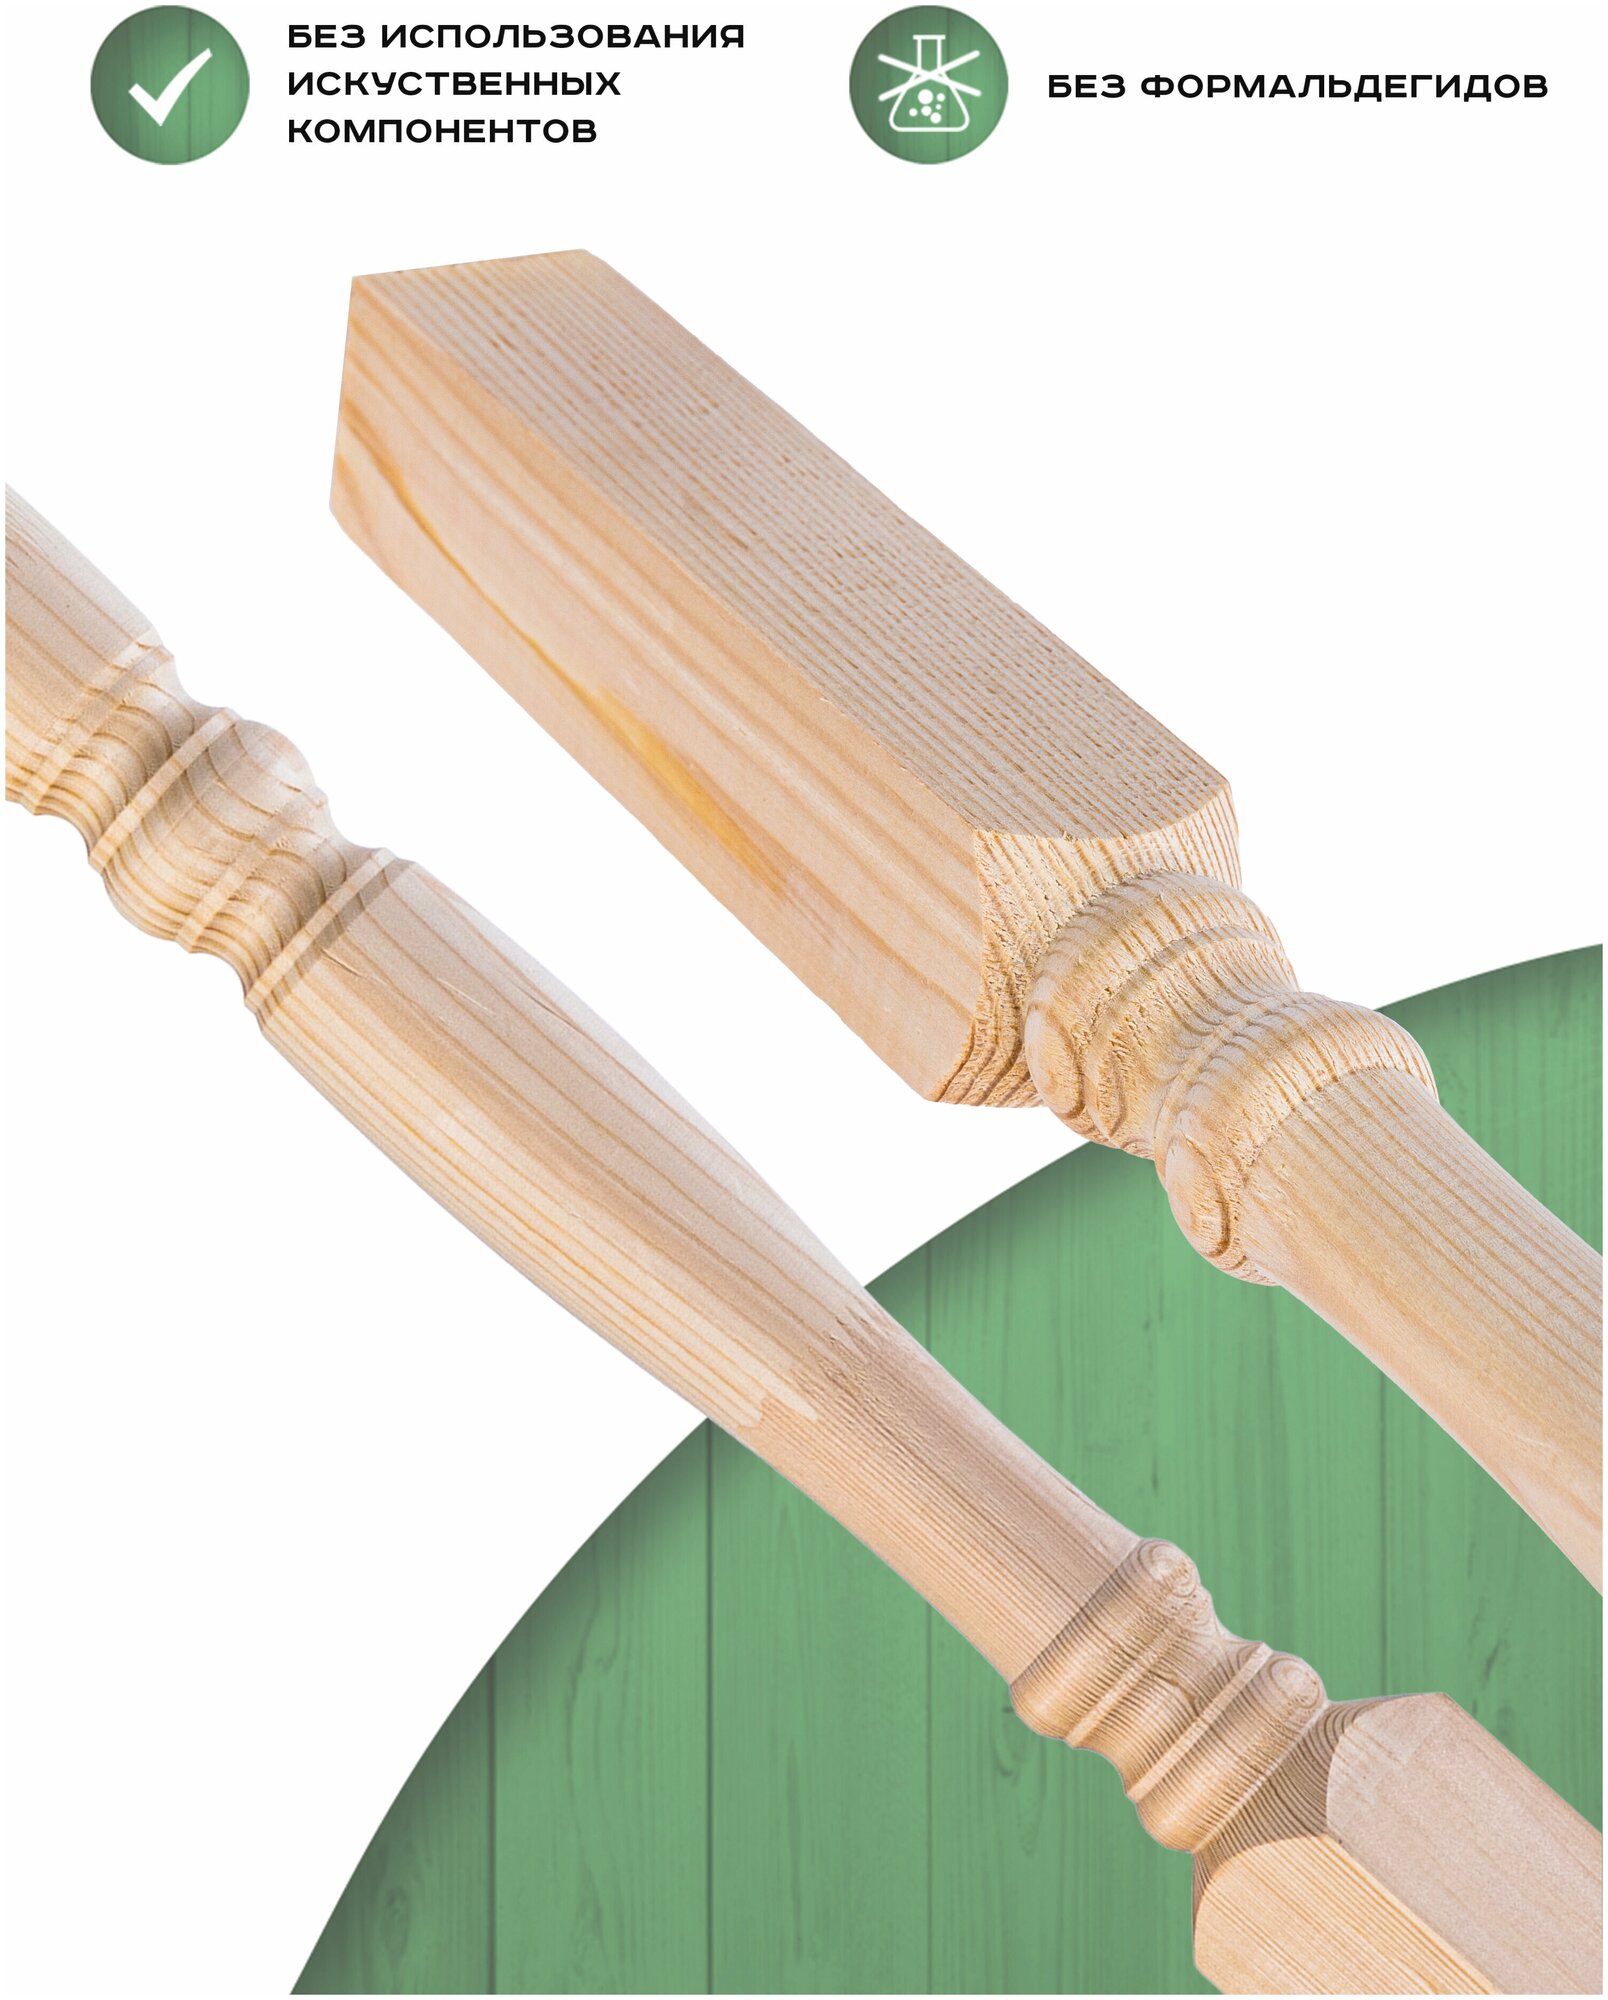 Набор 4 балясины деревянные 900х50х50мм / сращенная / ограждение для лестницы балюстрада из сосны премиум АА модель 50/Р4